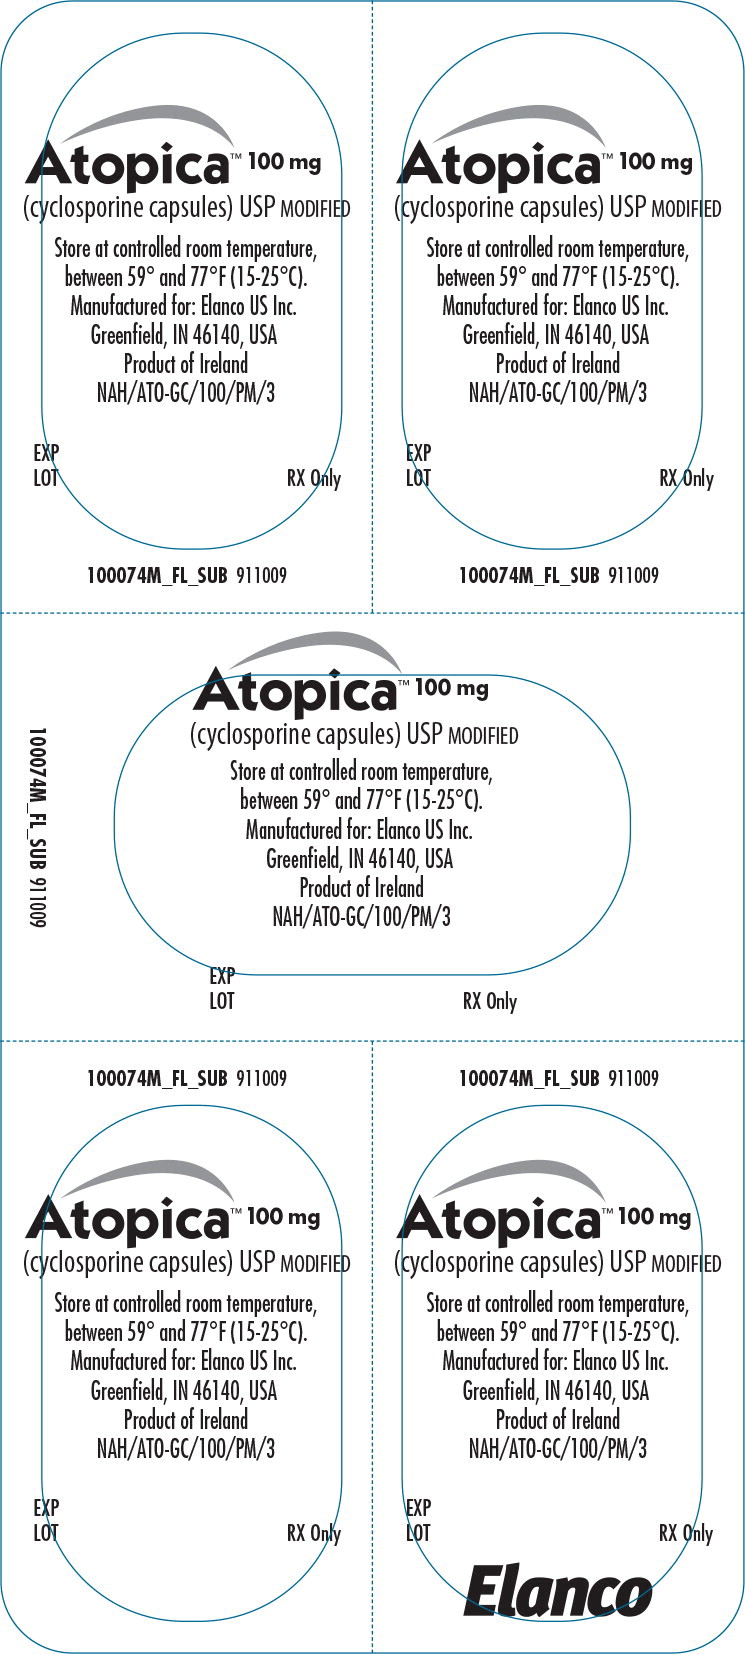 Principal Display Panel - Atopica 100mg Blister Label
